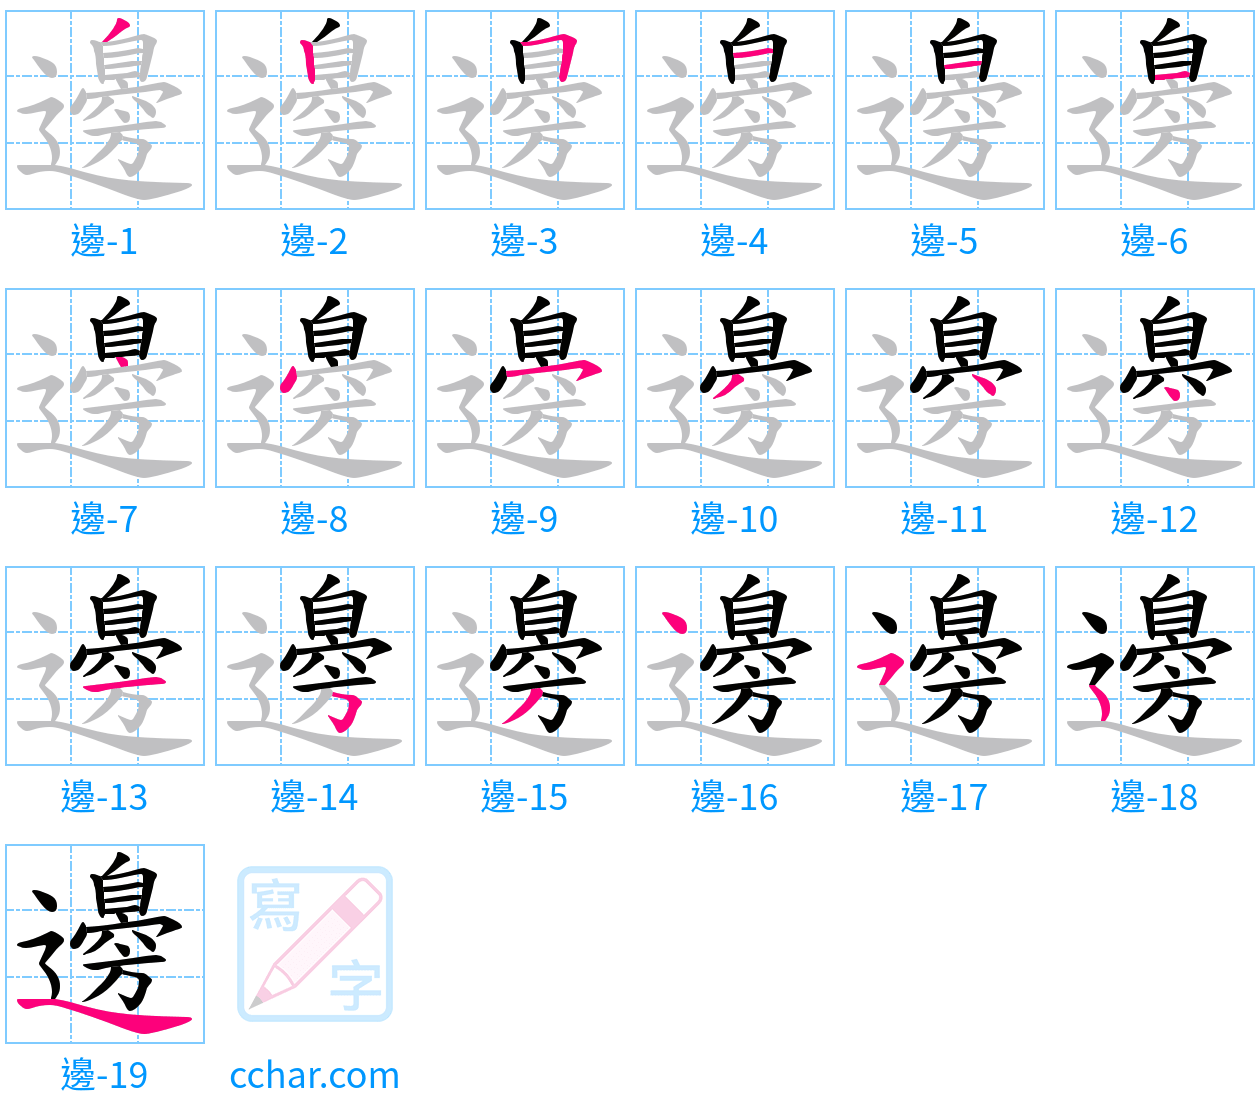 邊 stroke order step-by-step diagram